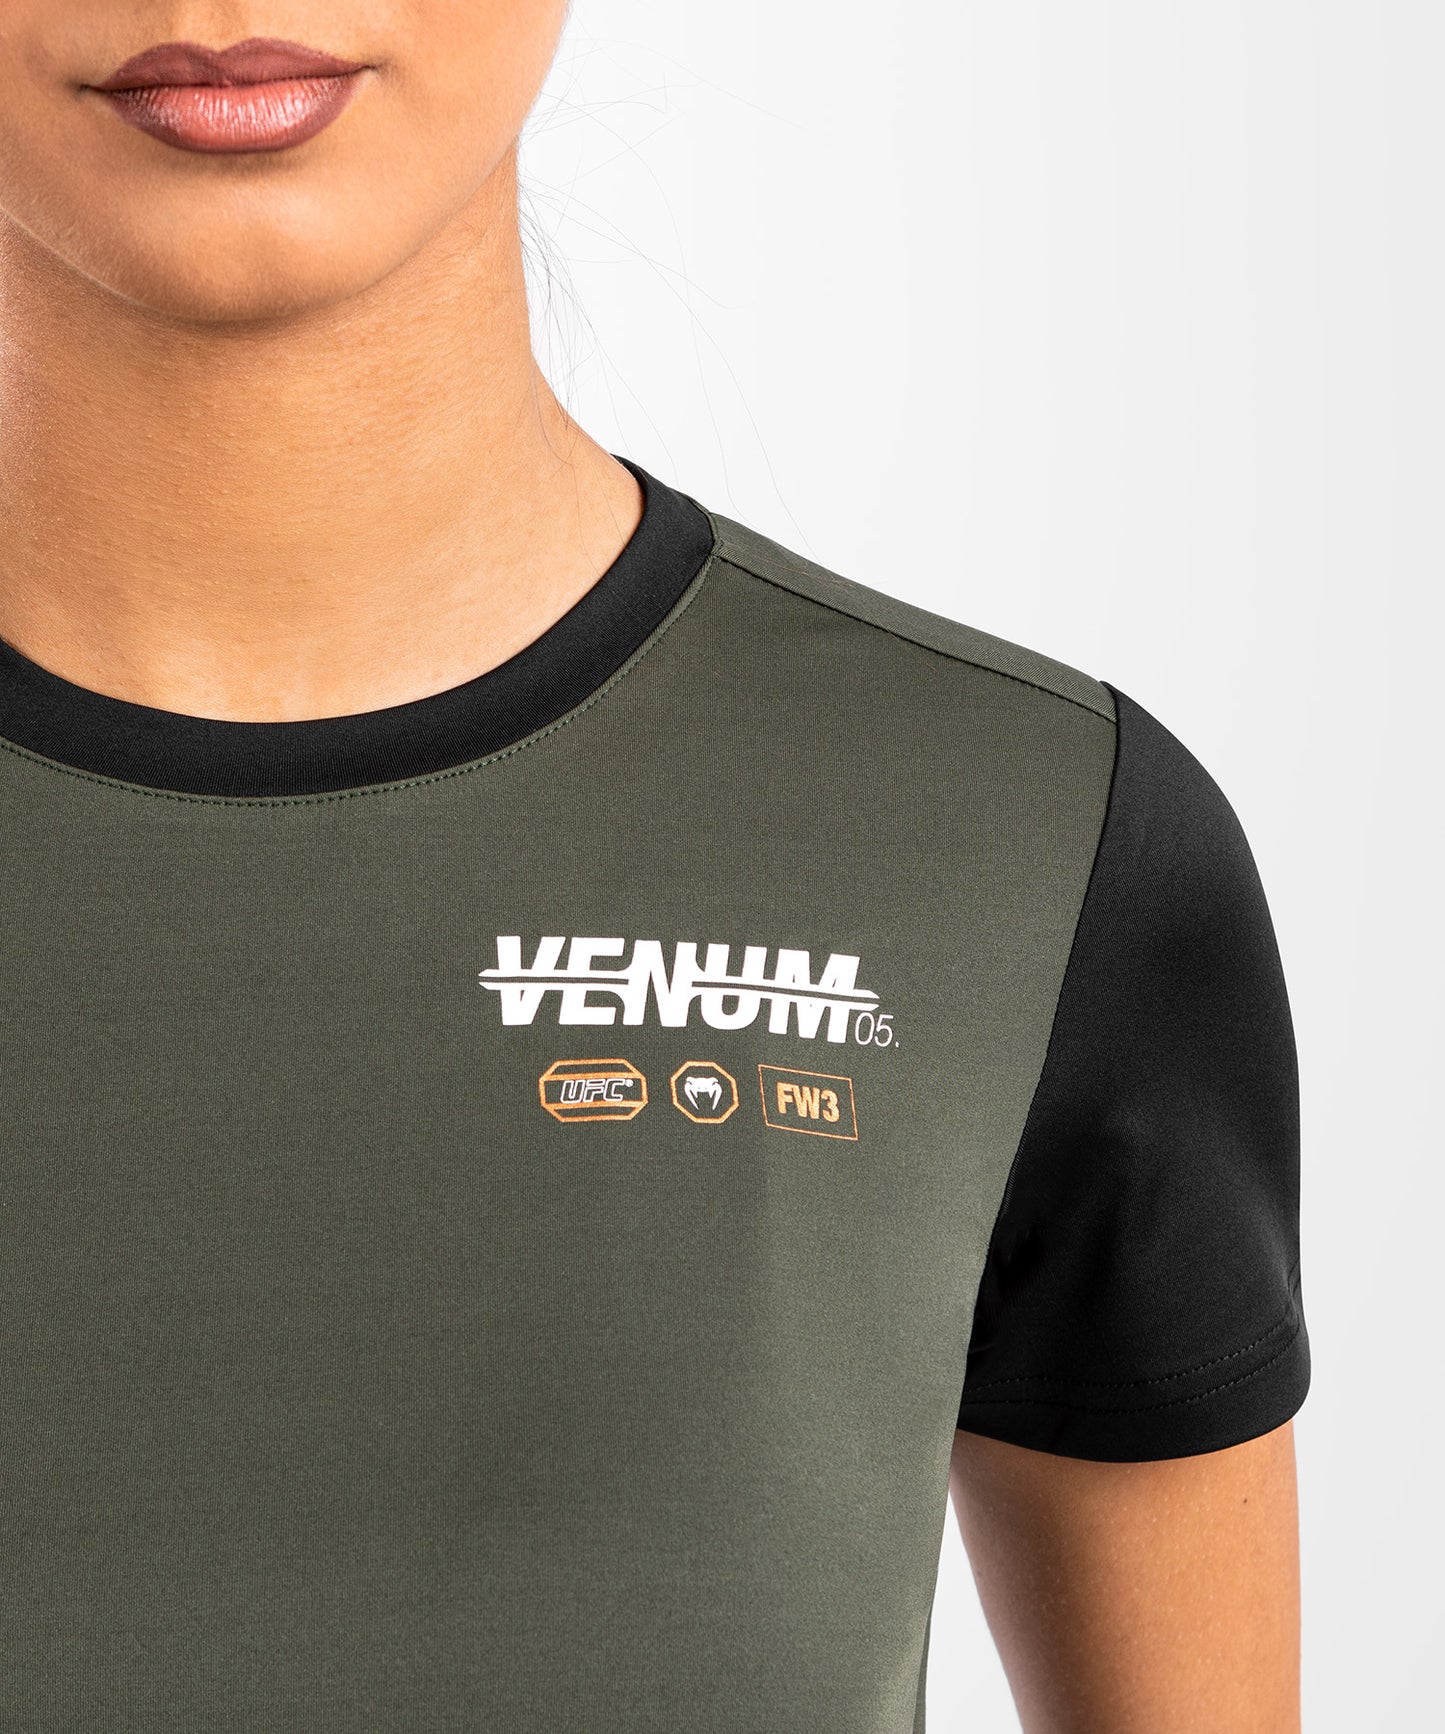 UFC Adrenaline by Venum Fight Week  Women’s Dry-Tech T-shirt - Khaki/Bronze